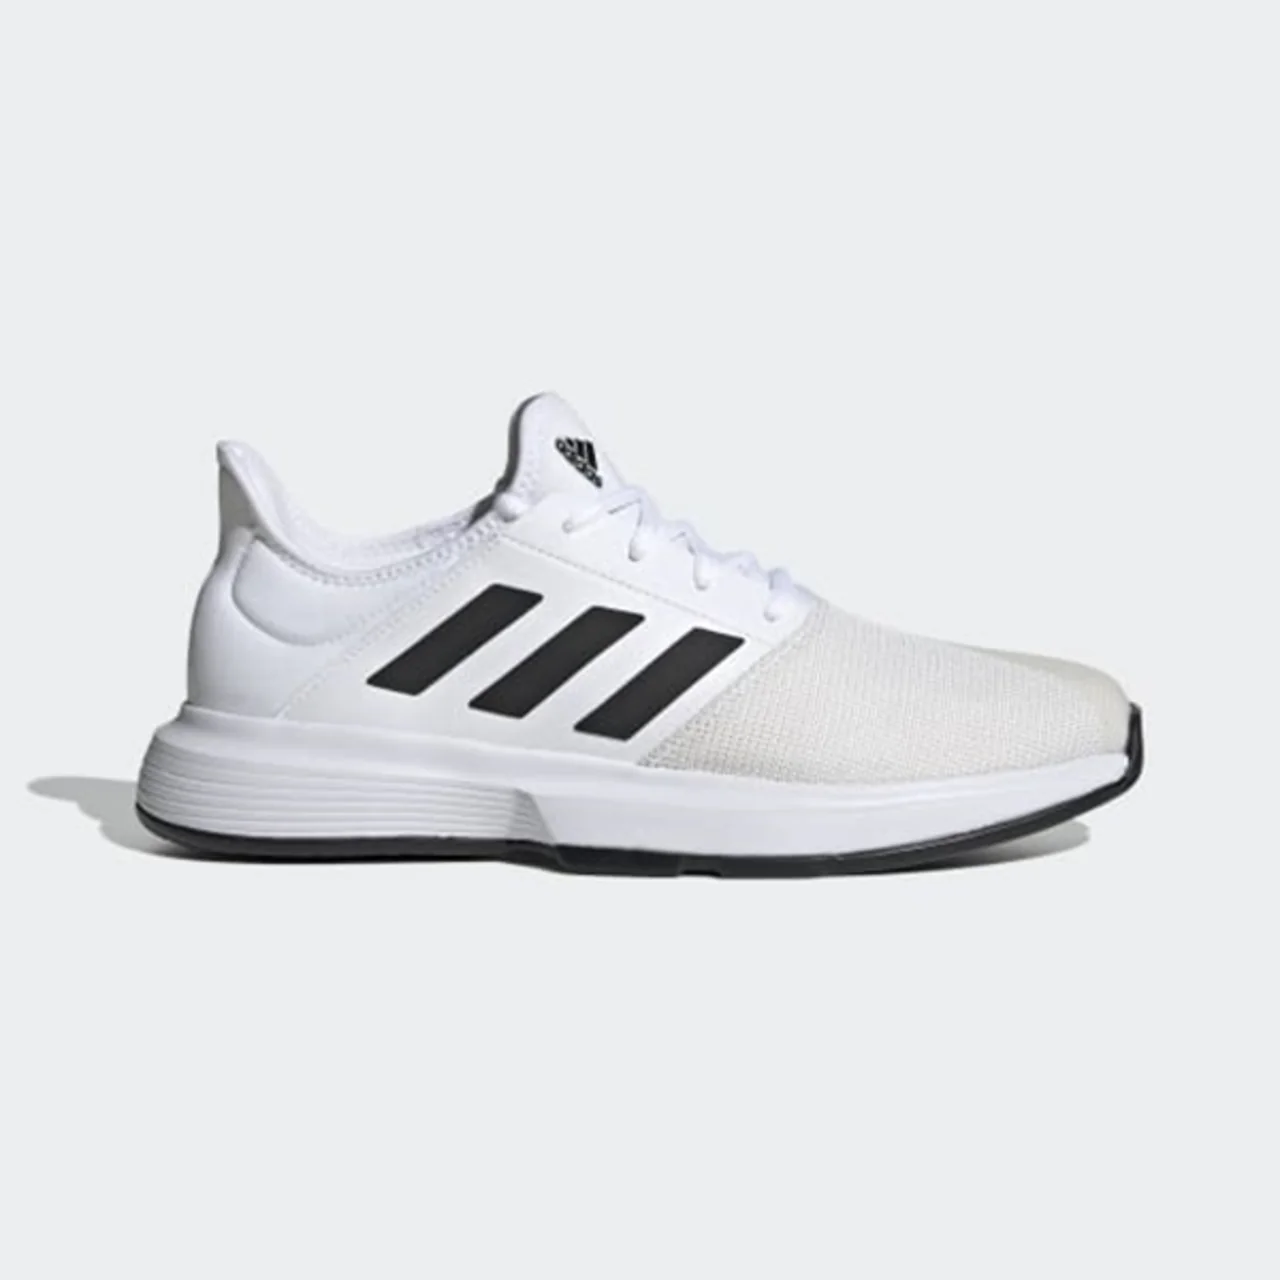 Adidas Game Court White/Black Tennis/Padel